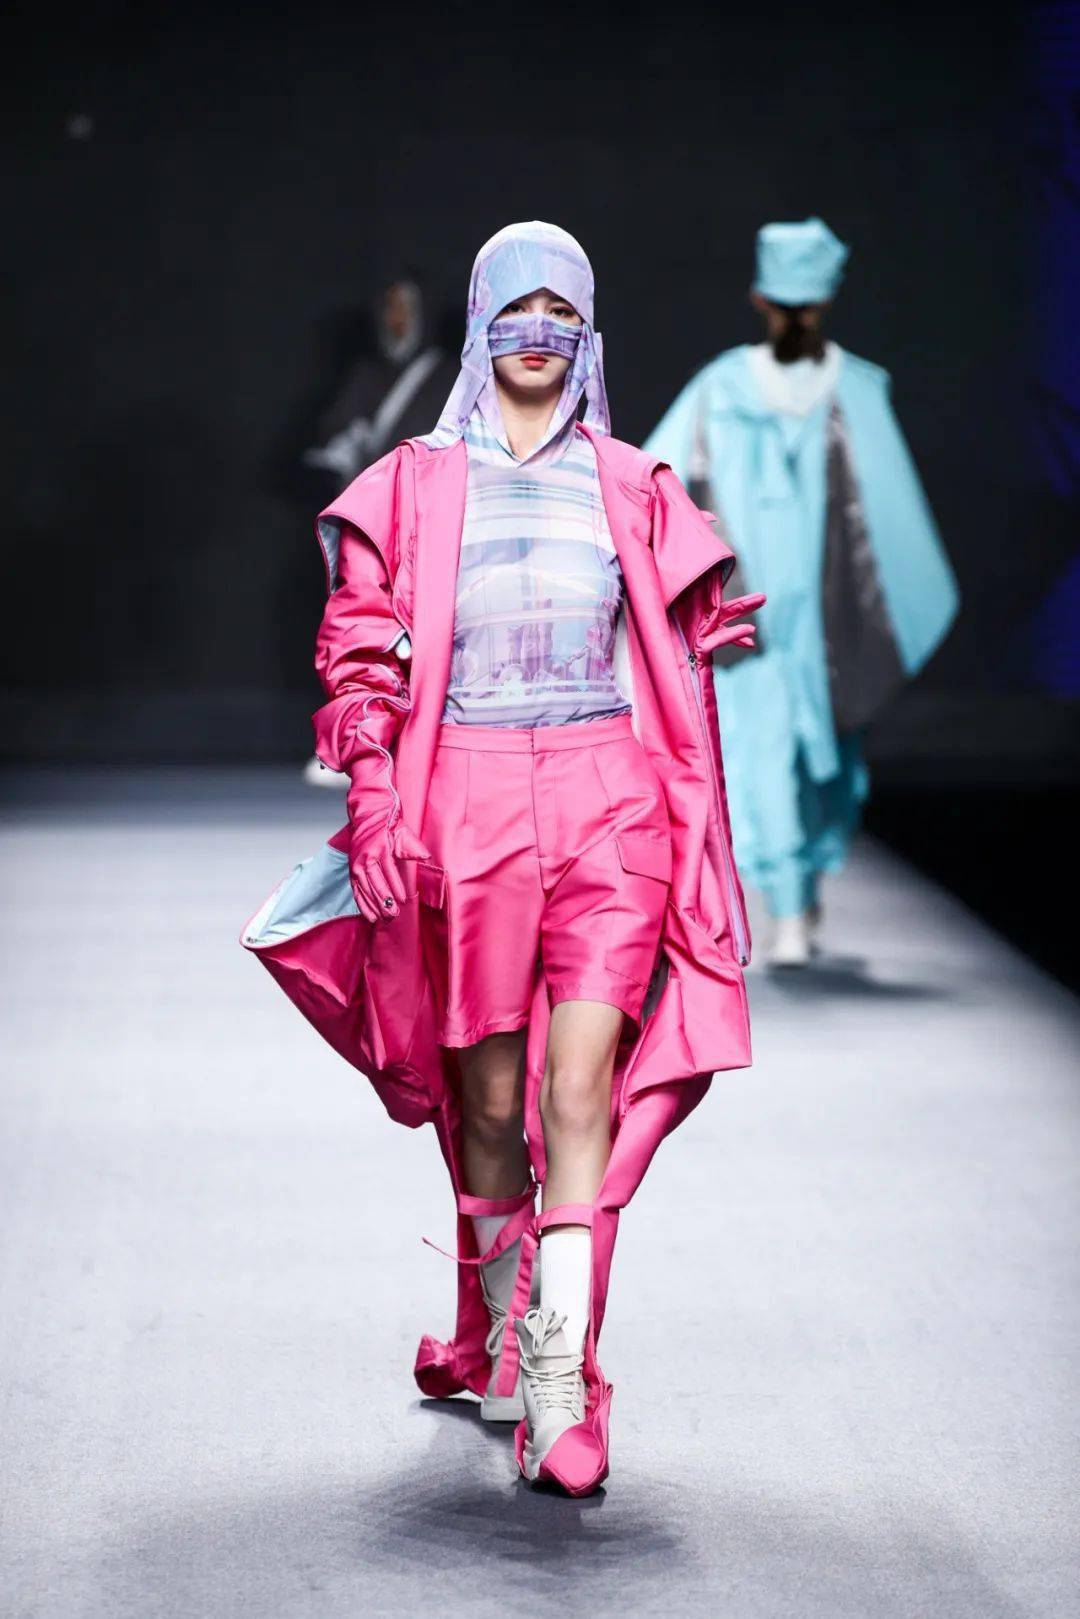 来自伦敦时装学院的张贺获得最佳风格奖,来自北京服装学院的吴颖华